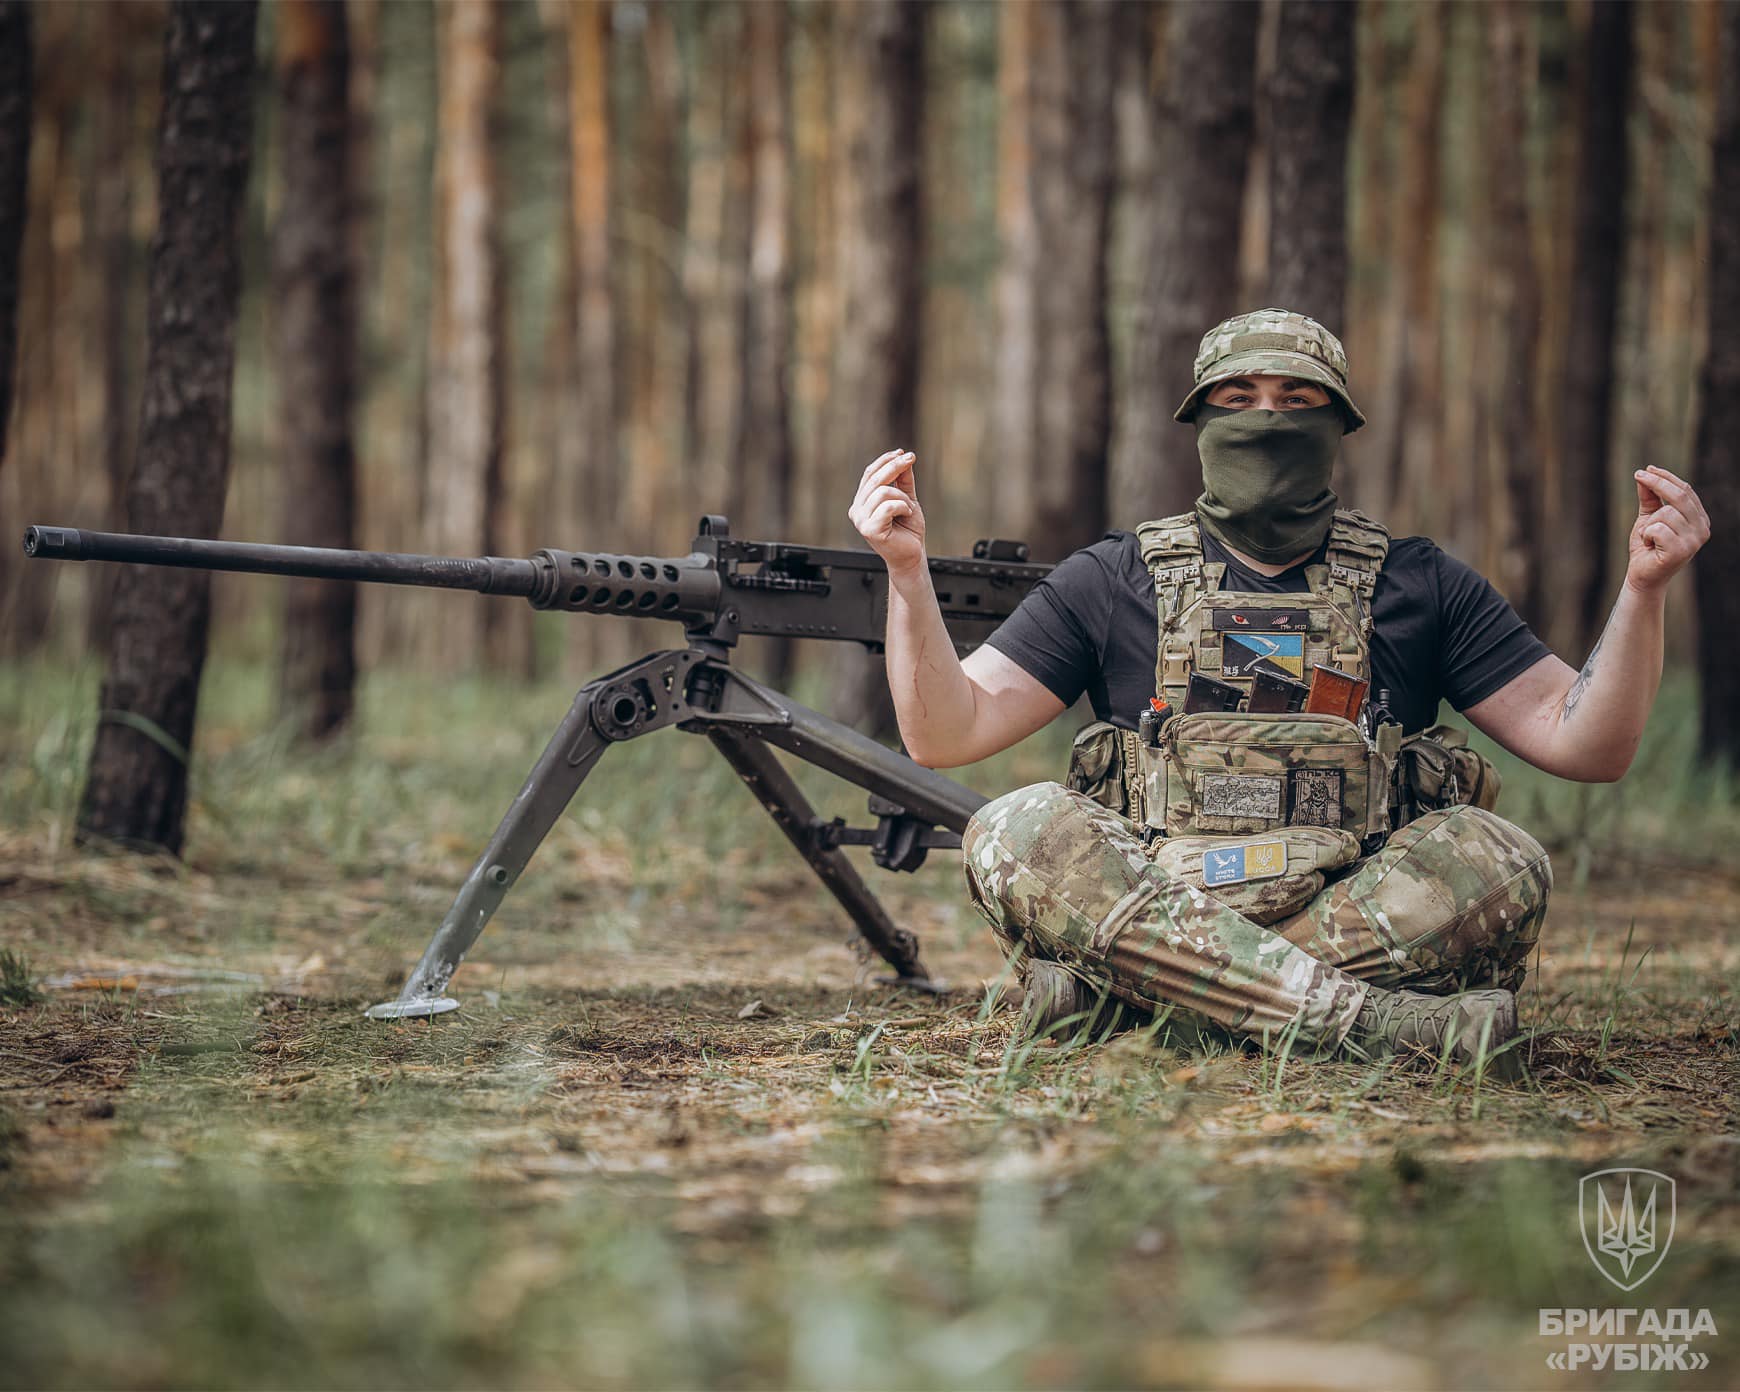 صور الجيش الاوكراني في الحرب الروسية-الاوكرانية.........متجدد GMk45WFWIAAMRuv?format=jpg&name=large